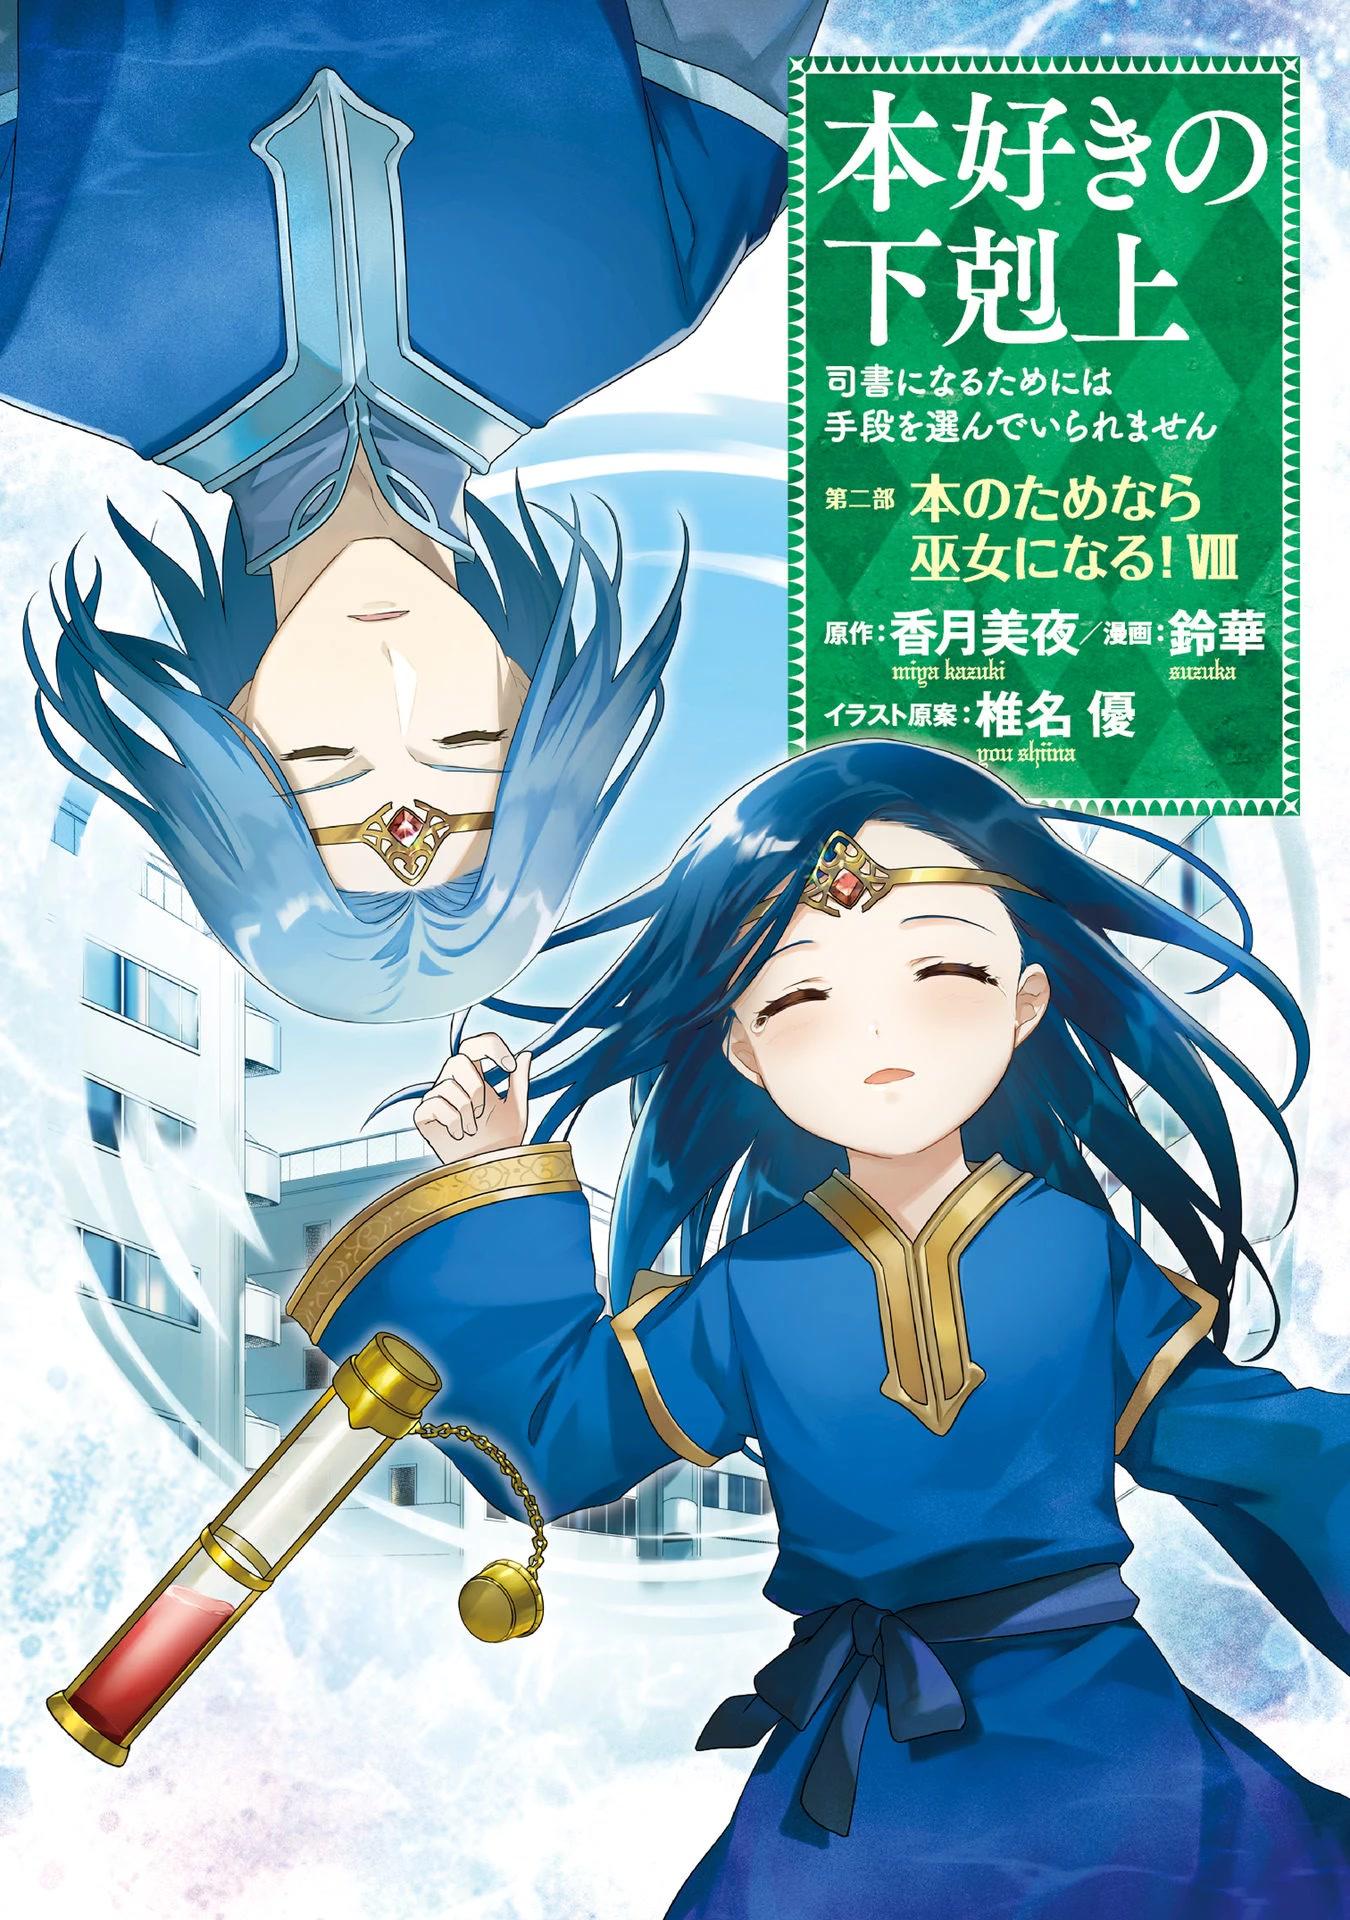 Honzuki no Gekokujou: Shisho ni Naru Tame ni wa Shudan wo Erandeiraremasen  3 - Ascendance of a Bookworm 3rd Season - Animes Online